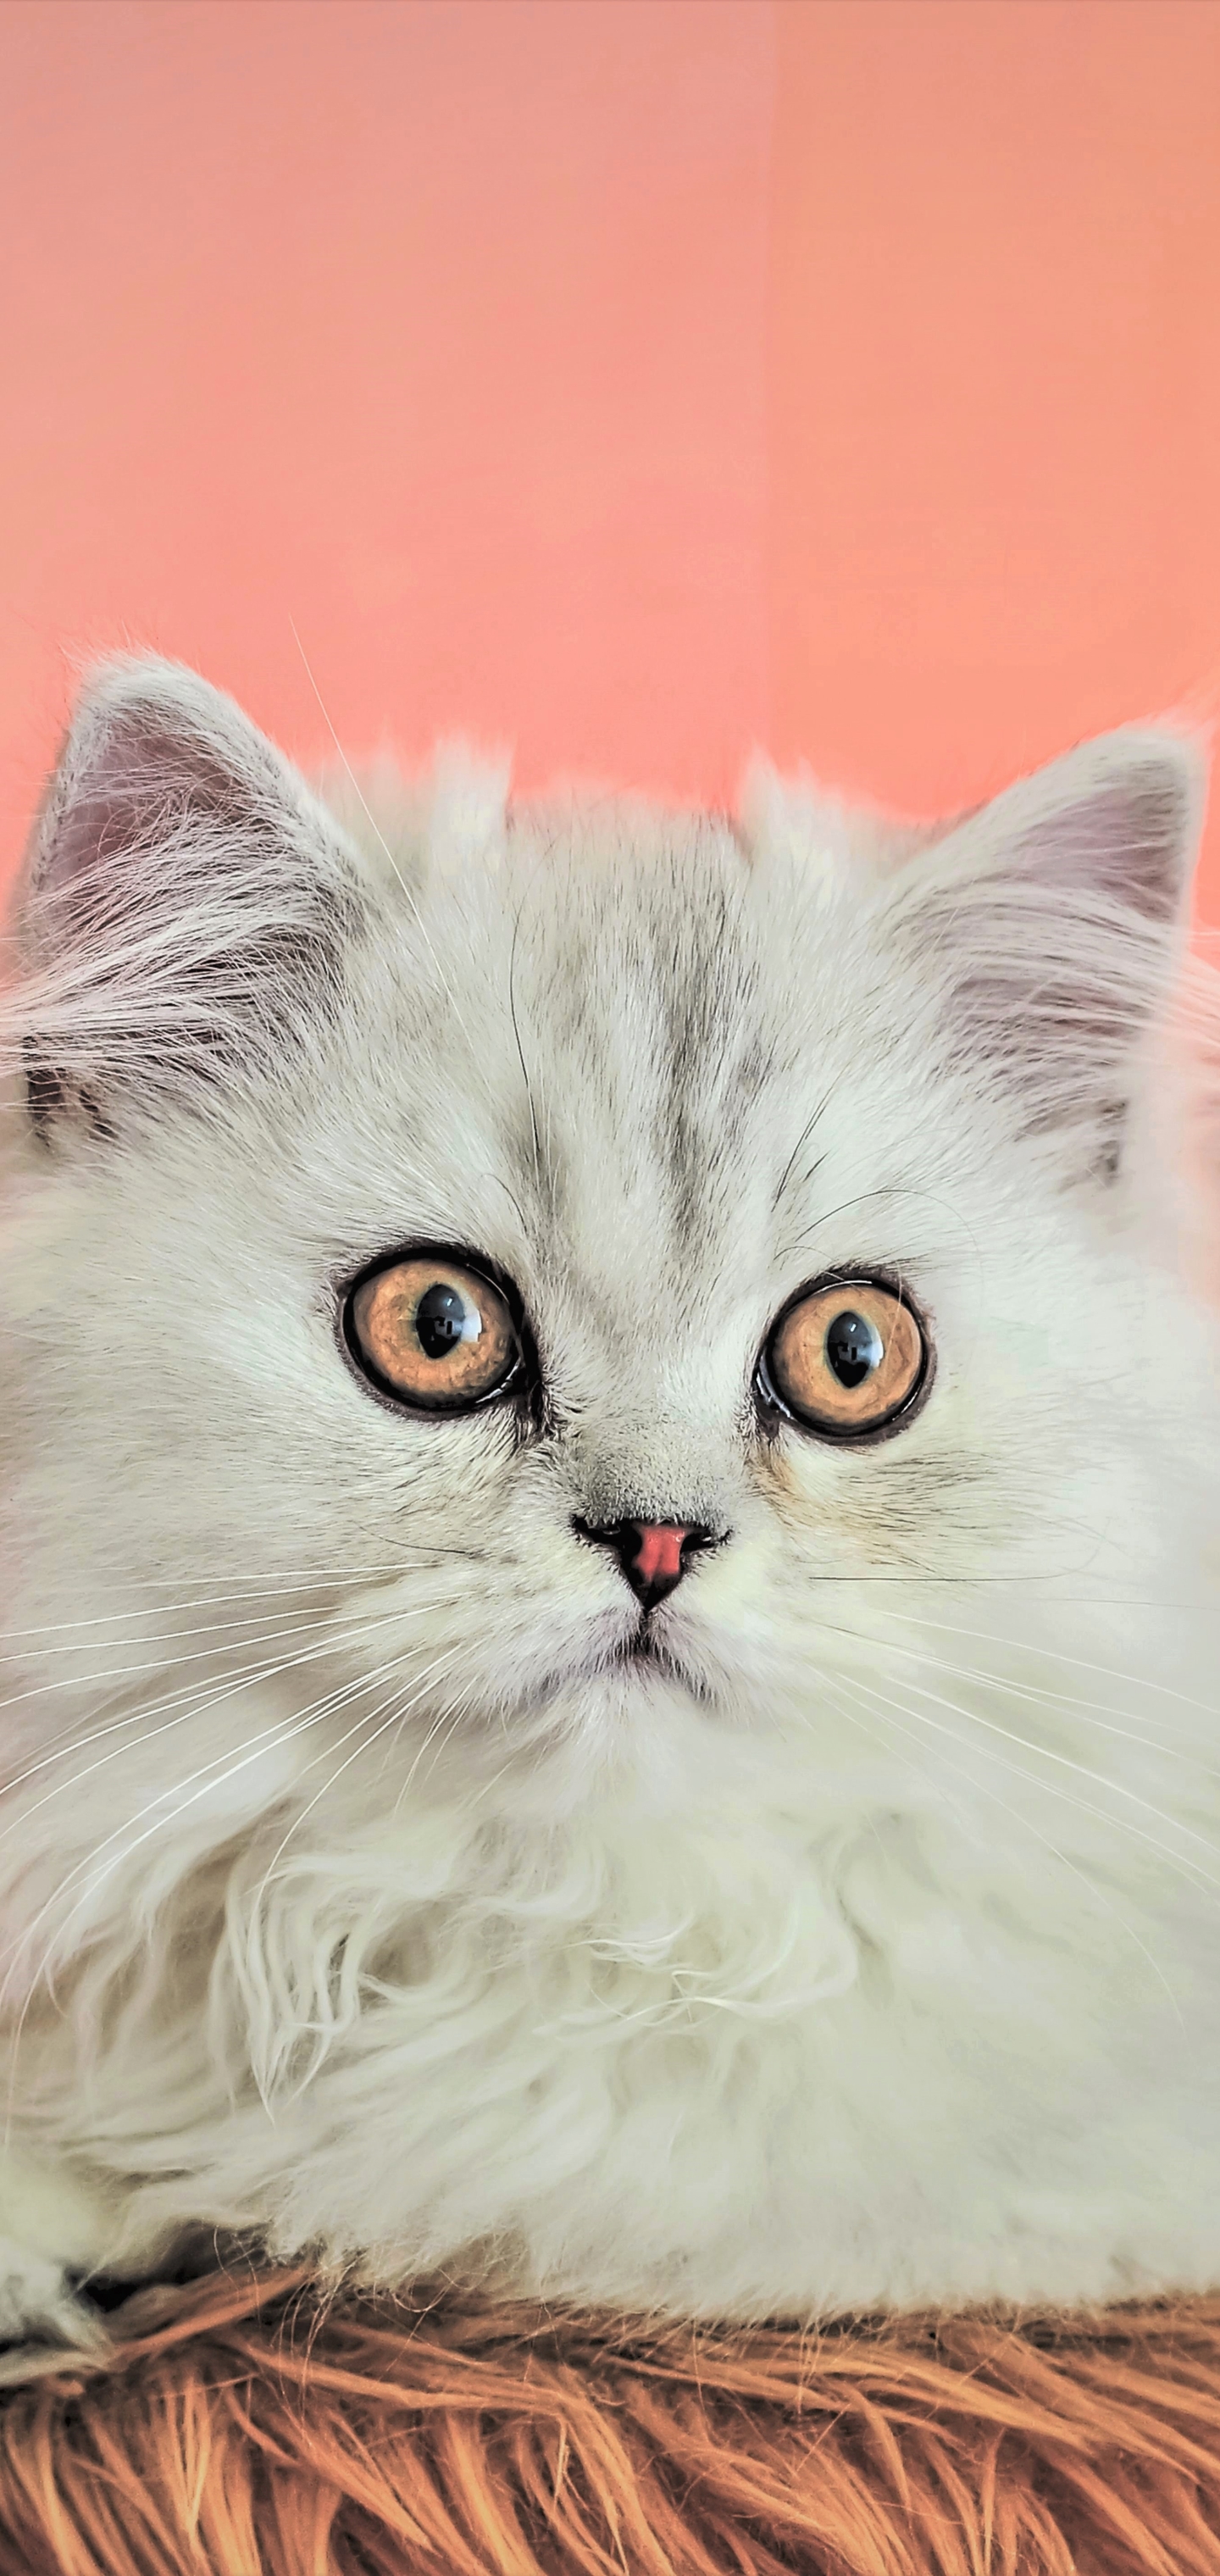 Descarga gratuita de fondo de pantalla para móvil de Animales, Gatos, Gato, Esponjoso.